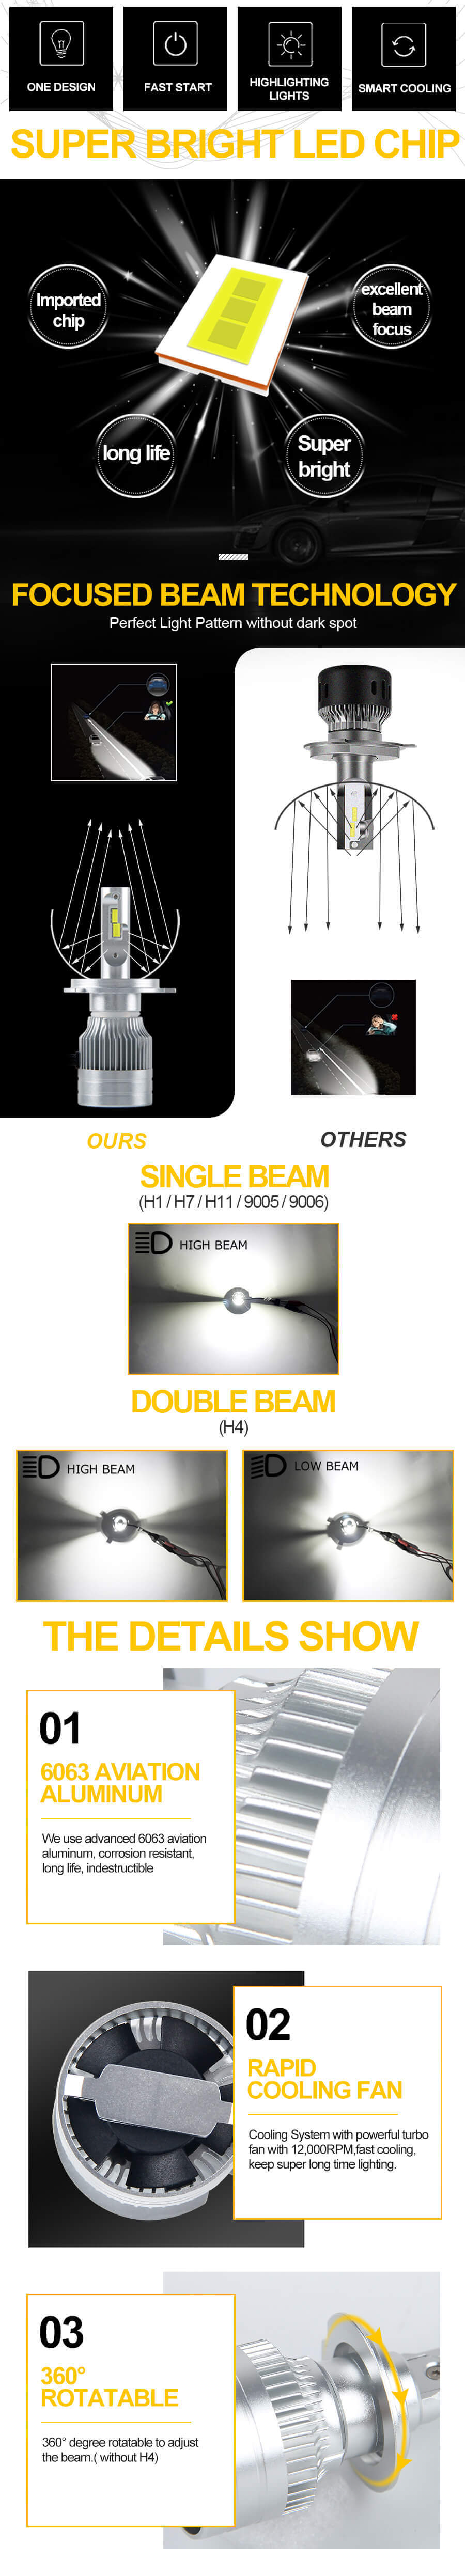 Super Bright All Metal Led Headlight Bulb JG-T12 advantages